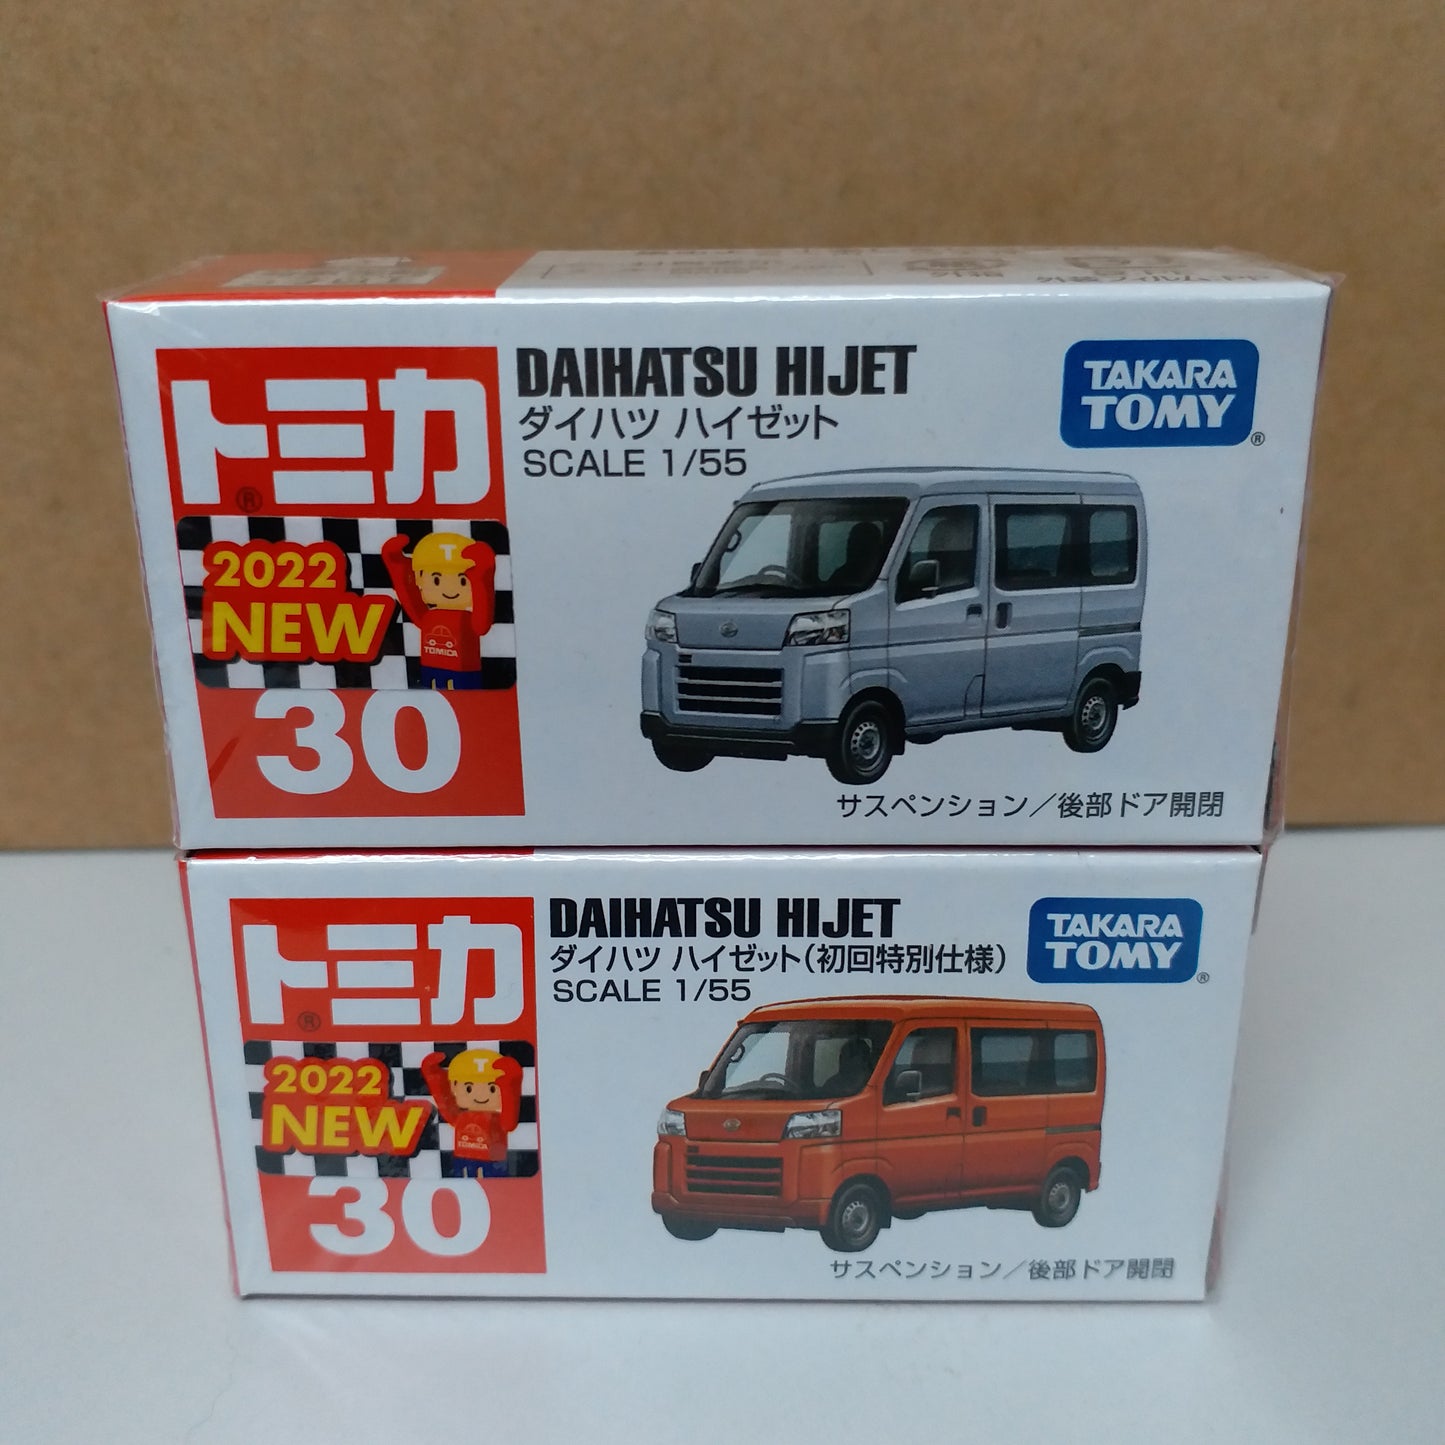 Tomica #30 Daihatsu Hijet set of two